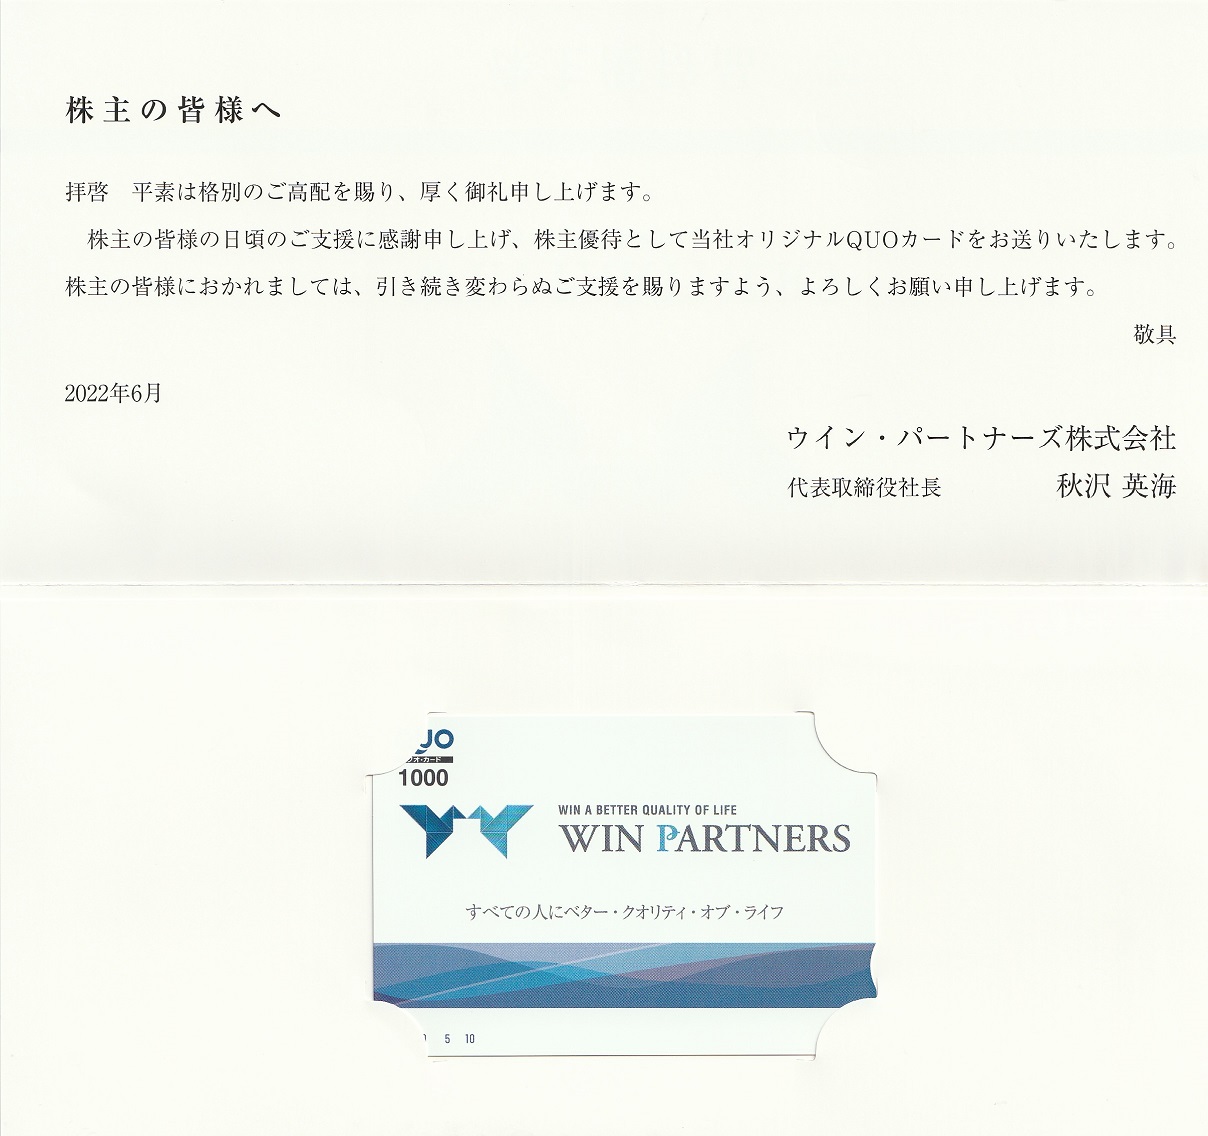 【3月優待】ウィン・パートナーズ株式会社からQUOカードが到着しました